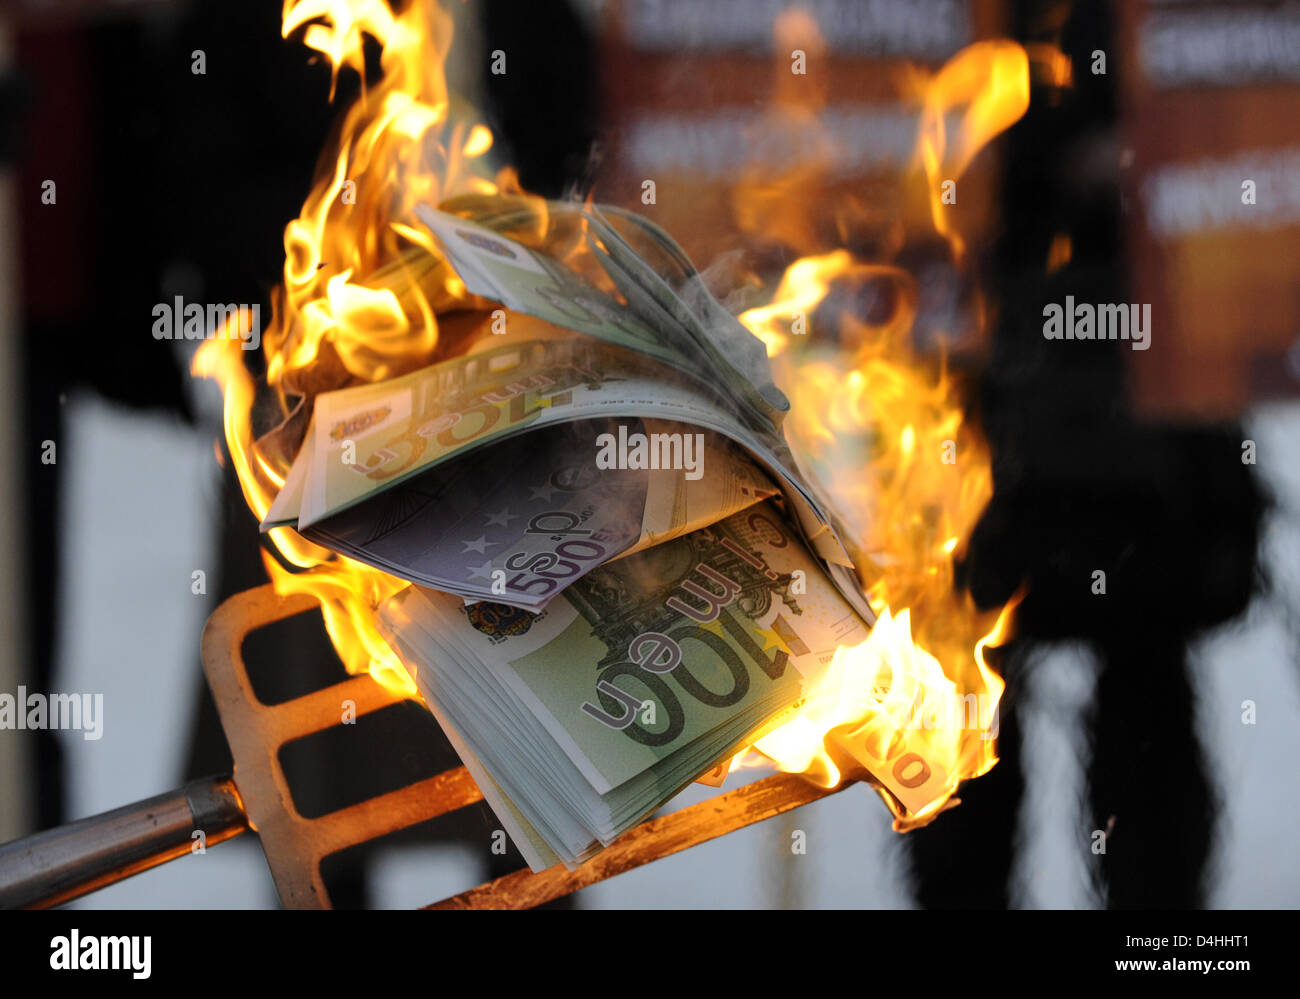 Demonstranten verbrennen gefälschte Banknoten vor dem Bundeskanzleramt in Berlin, Deutschland, 12. Januar 2009. Das zweite Paket der Belebung der Wirtschaft werden am Nachmittag in der Kanzlei besprochen. Freuen Sie sich auf zusätzliche Investitionen in die Infrastruktur sowie eine Reduzierung der Steuern und Abgaben. Die Demonstranten fürchten das Geld der Steuerzahler zu? verbrannt? durch das Paket. Foto: R Stockfoto